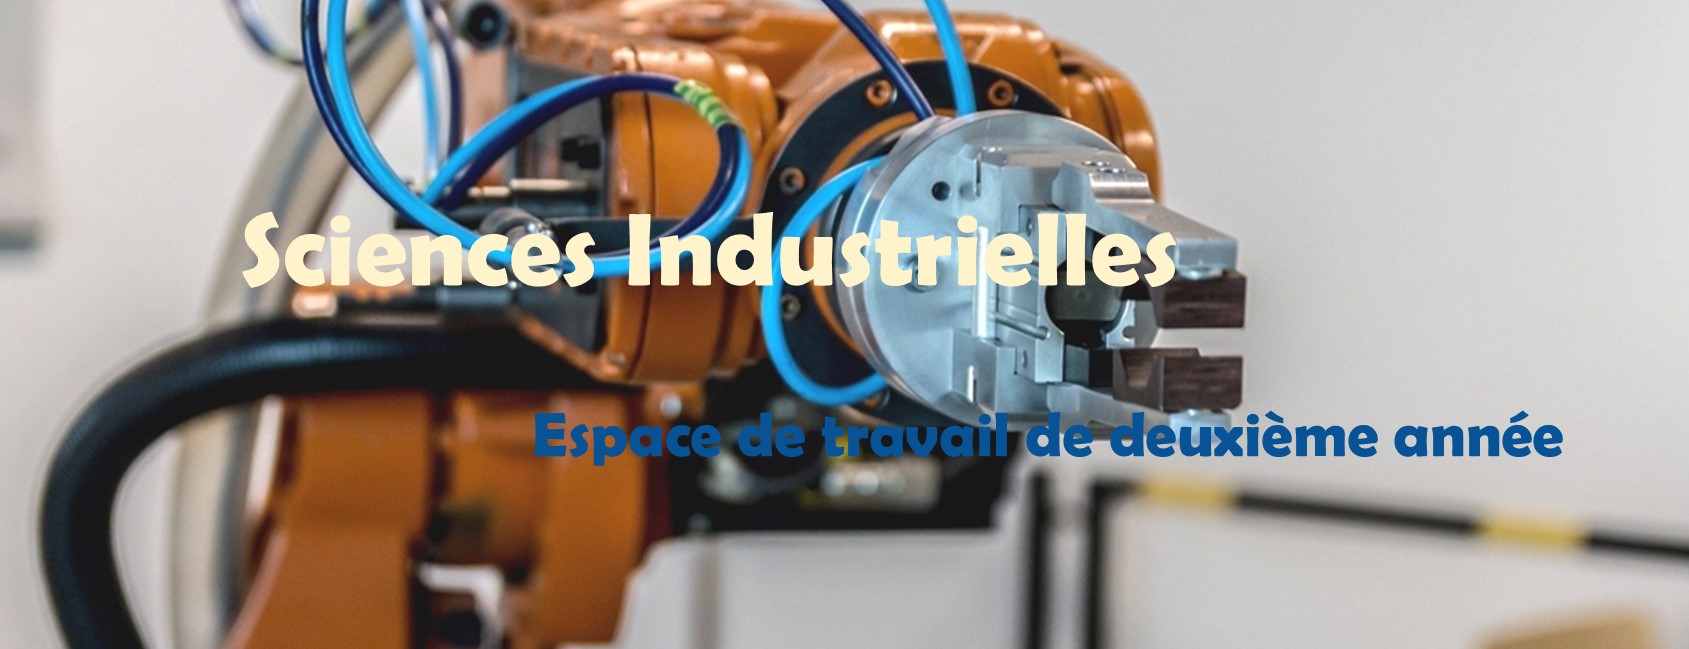 Sciences Industrielles I2 [NANTES]